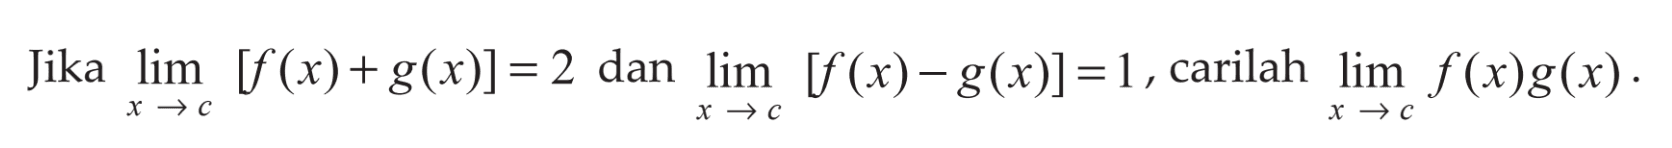 Jika limit x->c [f(x)+g(x)]=2 dan limit x->c [f(x)-g(x)]=1, carilah limit x->c f(x) g(x).